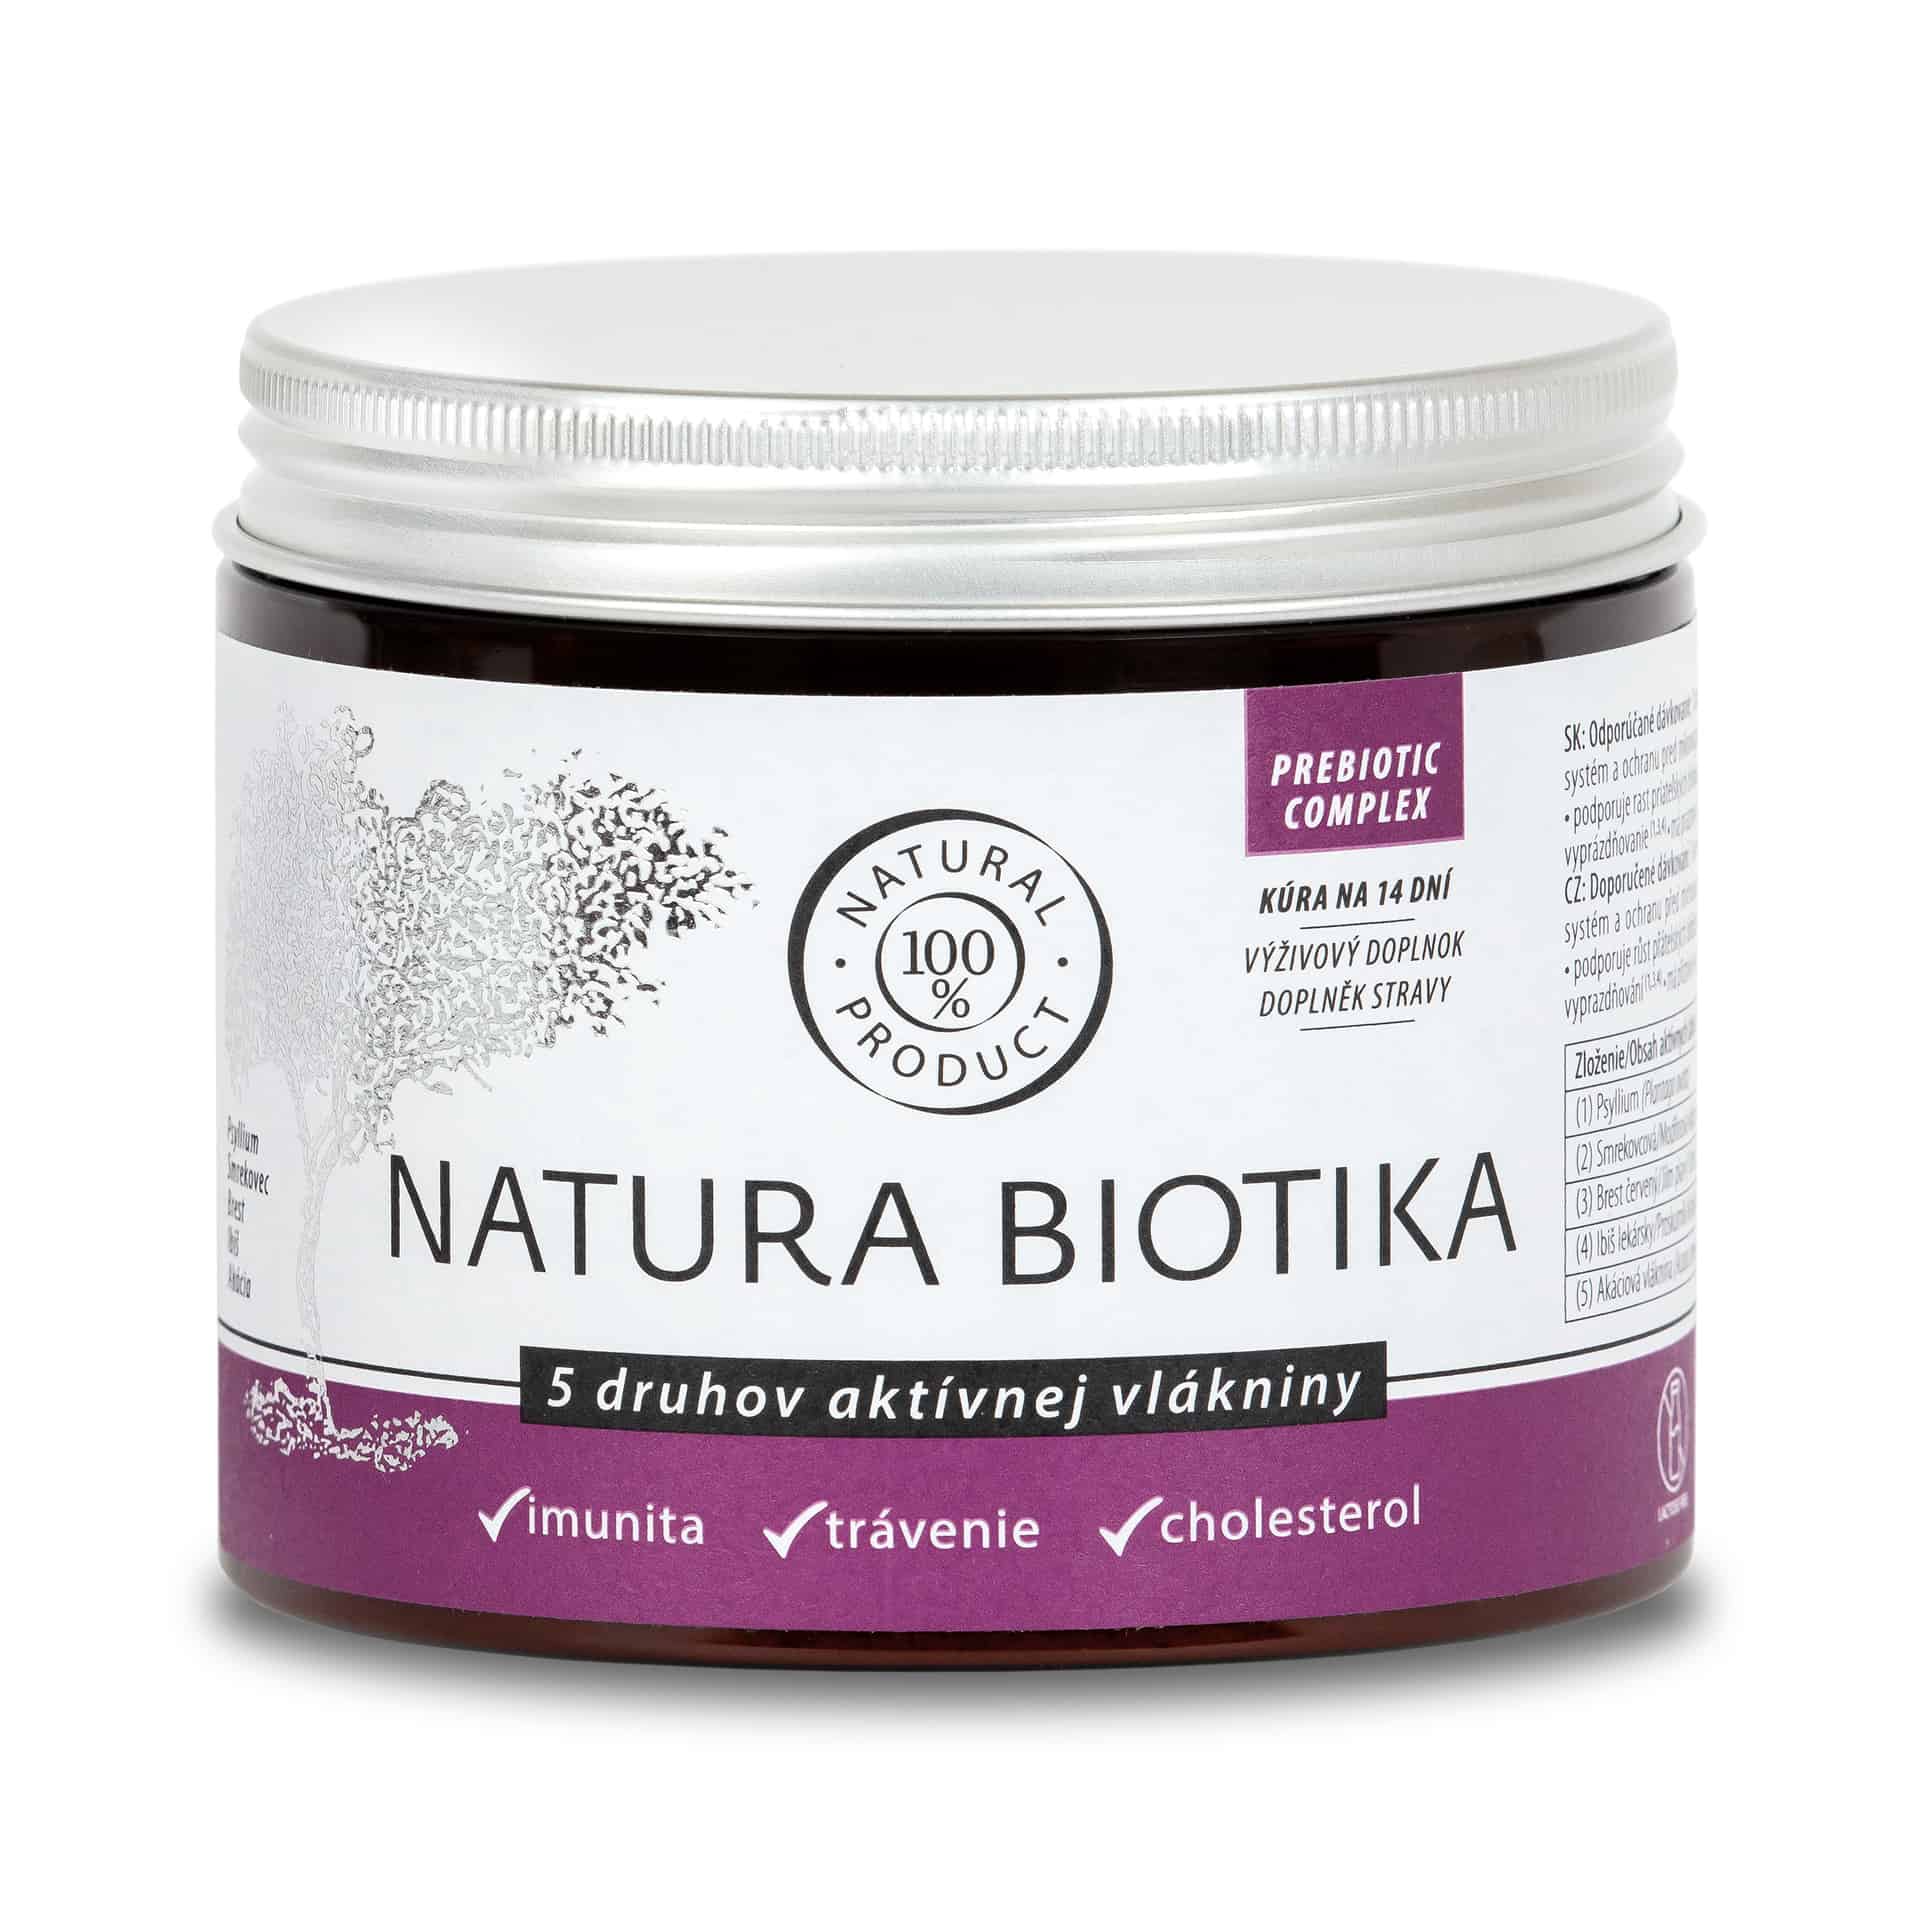 E-shop Natura Biotika - 5 druhov aktívnej vlákniny, 140g